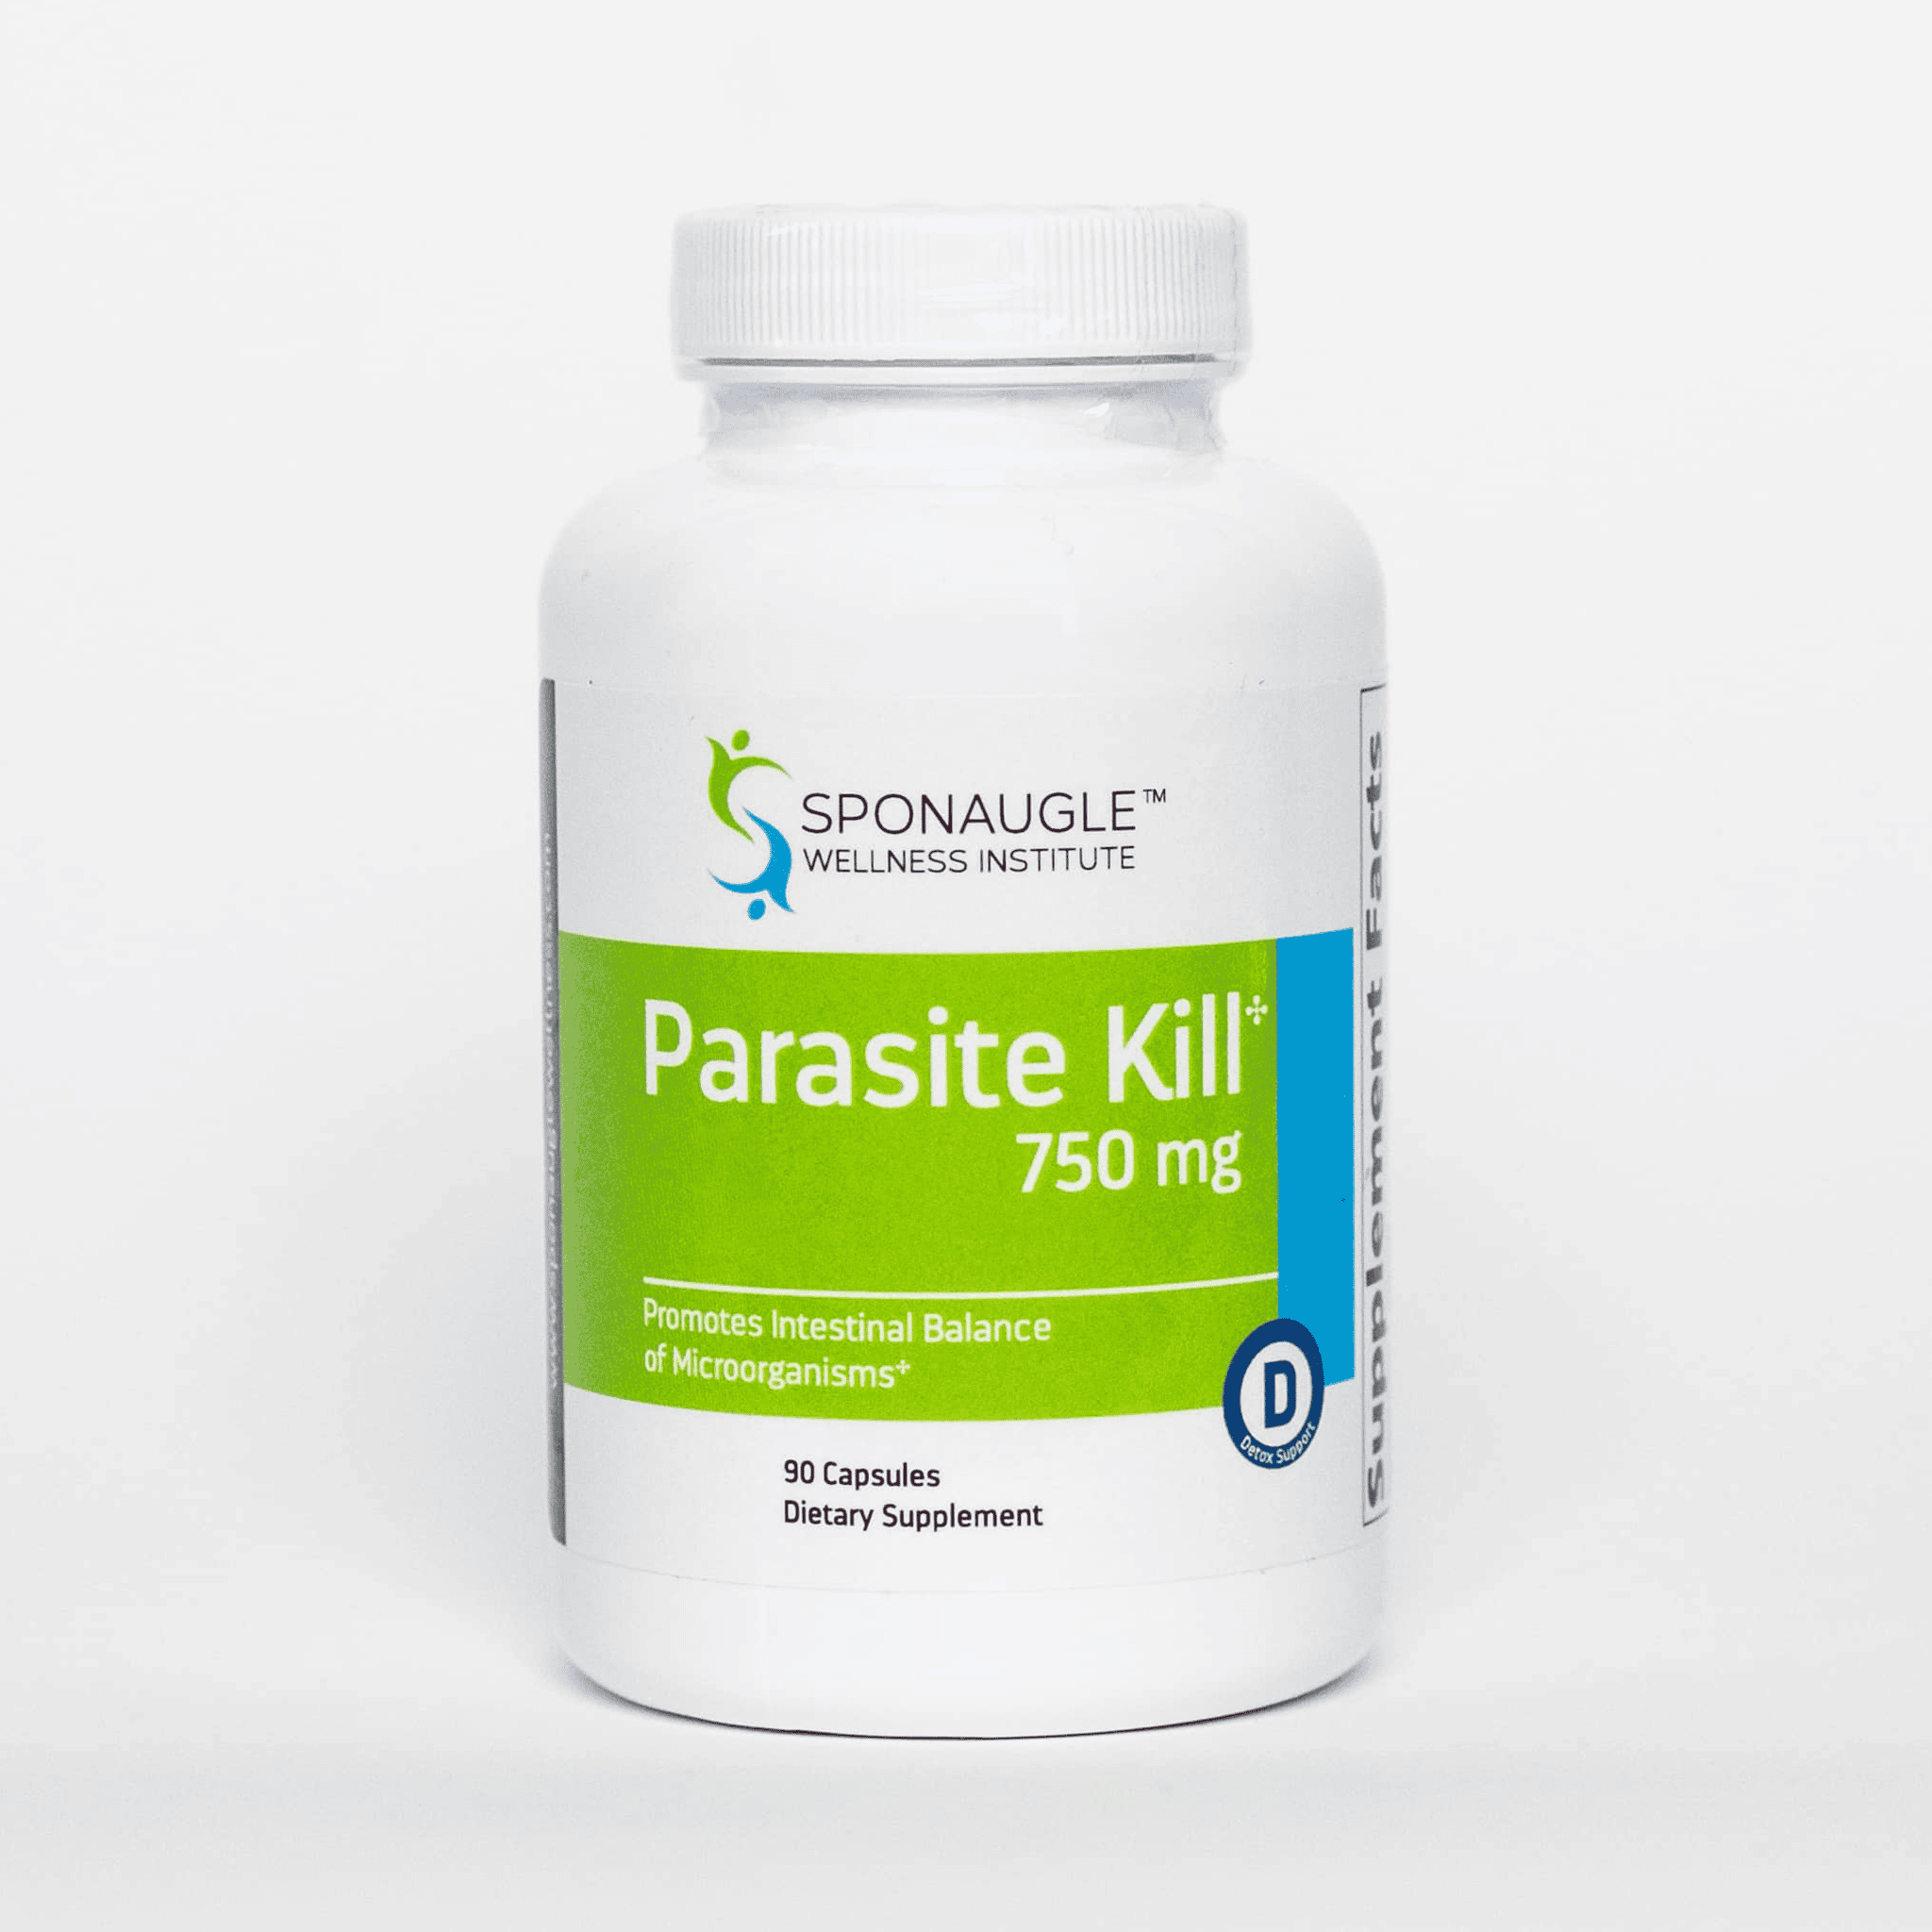 Parasite Kill